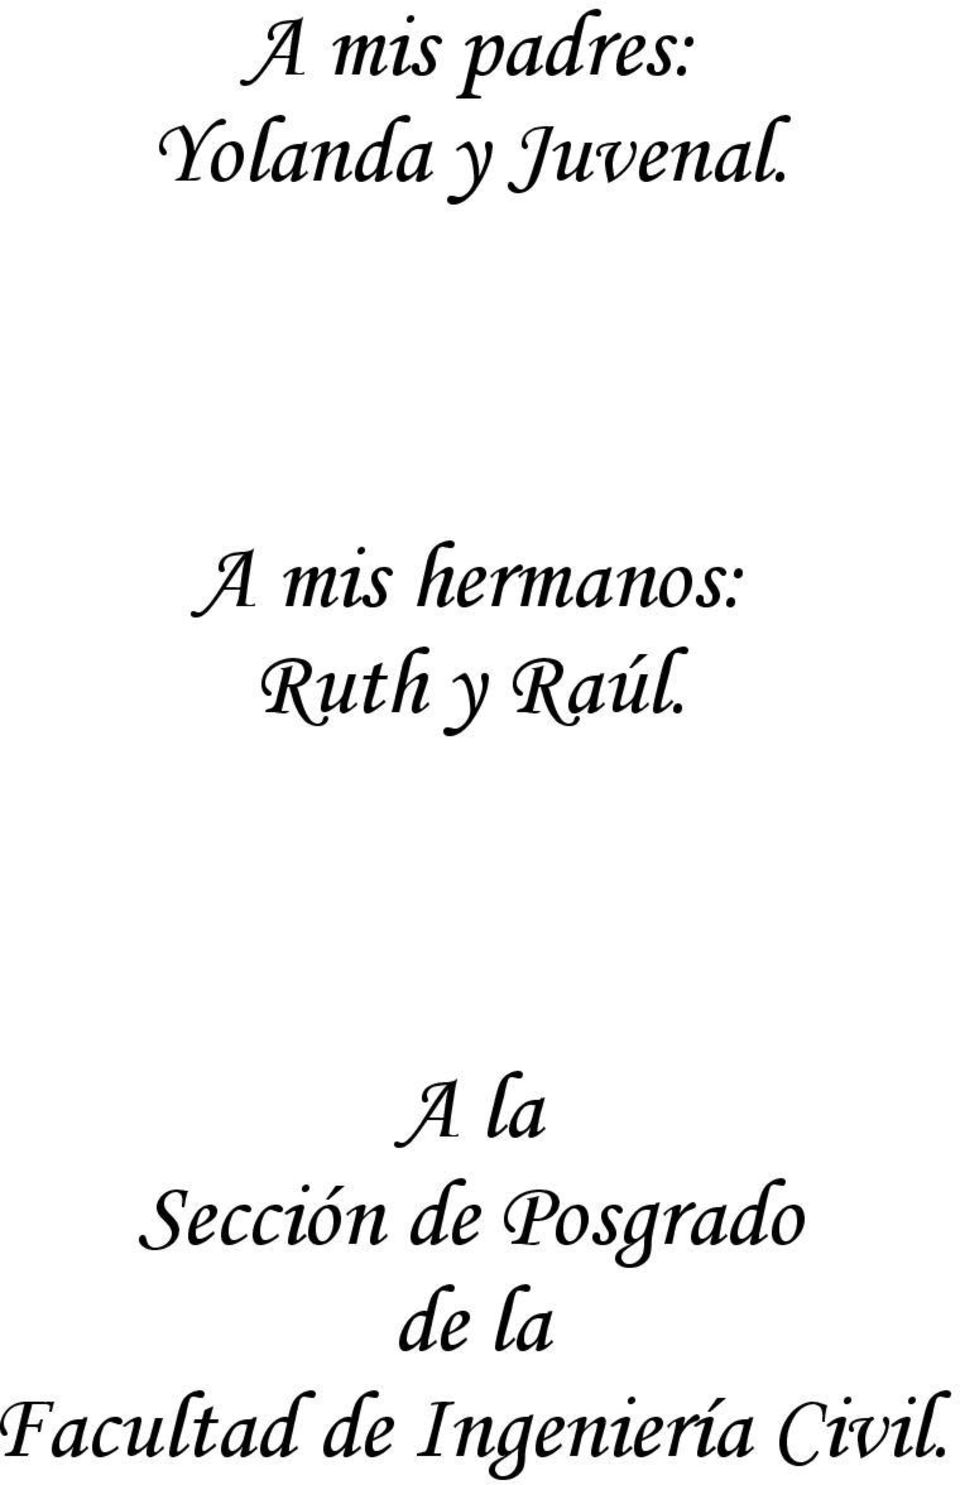 A mis hrmanos: Ruth y Raúl.